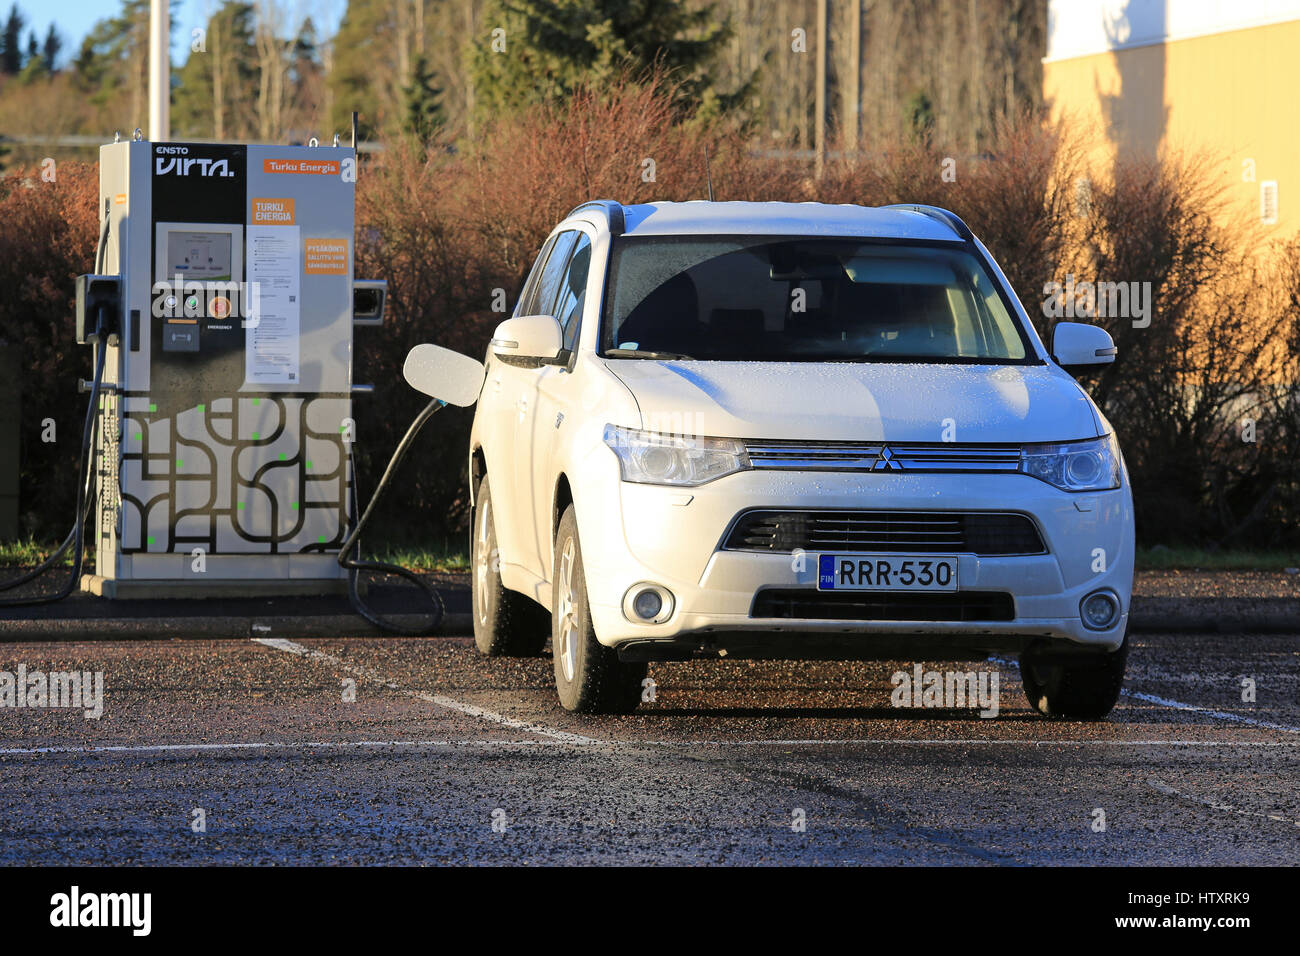 PAIMIO, Finnland - 5. Dezember 2016: Mitsubishi Outlander-Plug-in Hybrid SUV Batterie aufladen. Auf dem Markt seit 2013 war der Outlander P-HEV die fi Stockfoto